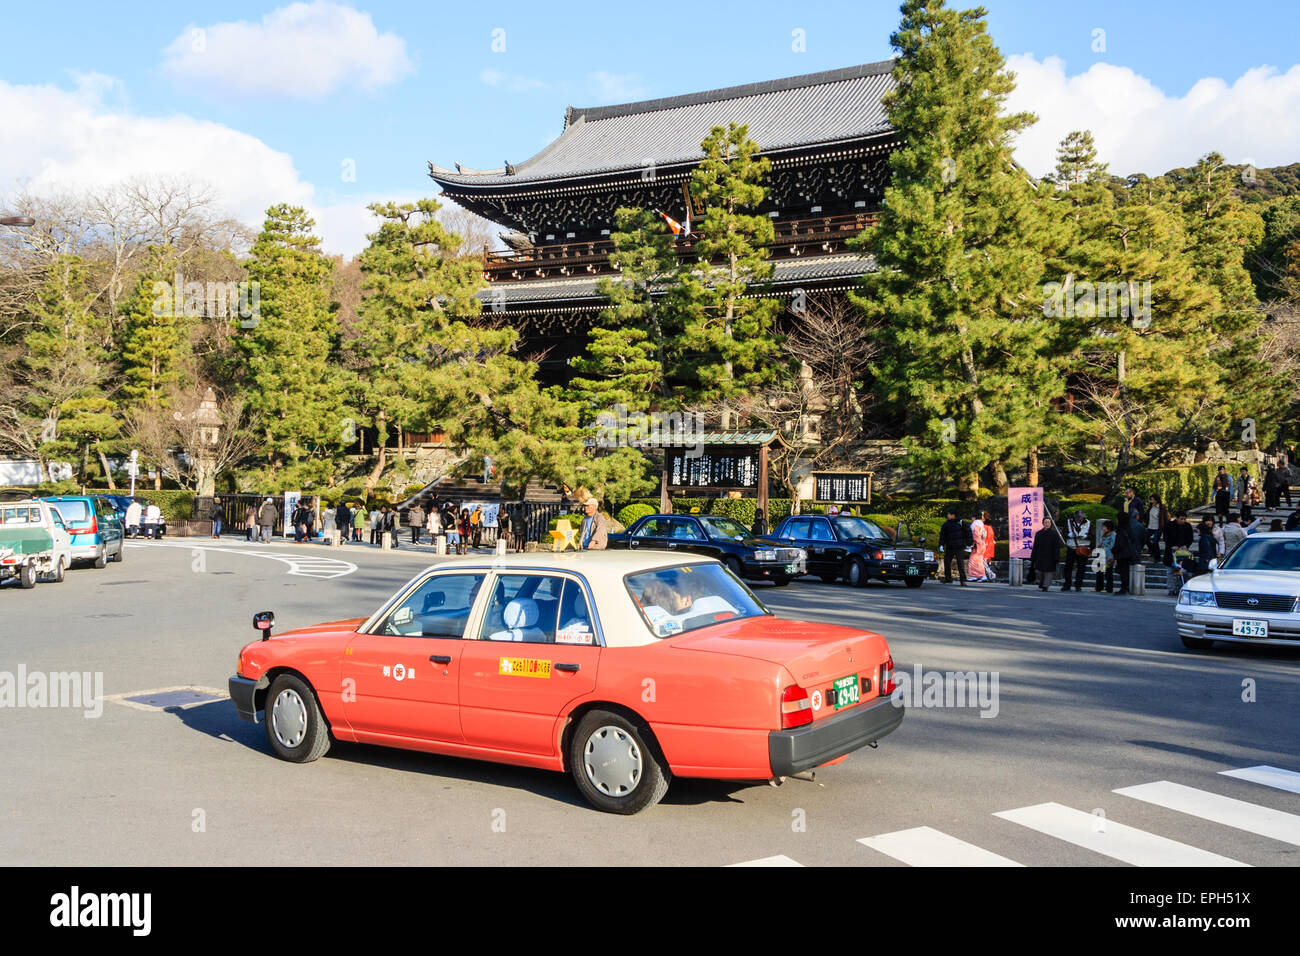 Giappone, Kyoto, Chion-nel tempio. In legno massiccio gatehouse, Sammon, con strada in primo piano e il servizio taxi passando, cieli blu. Foto Stock